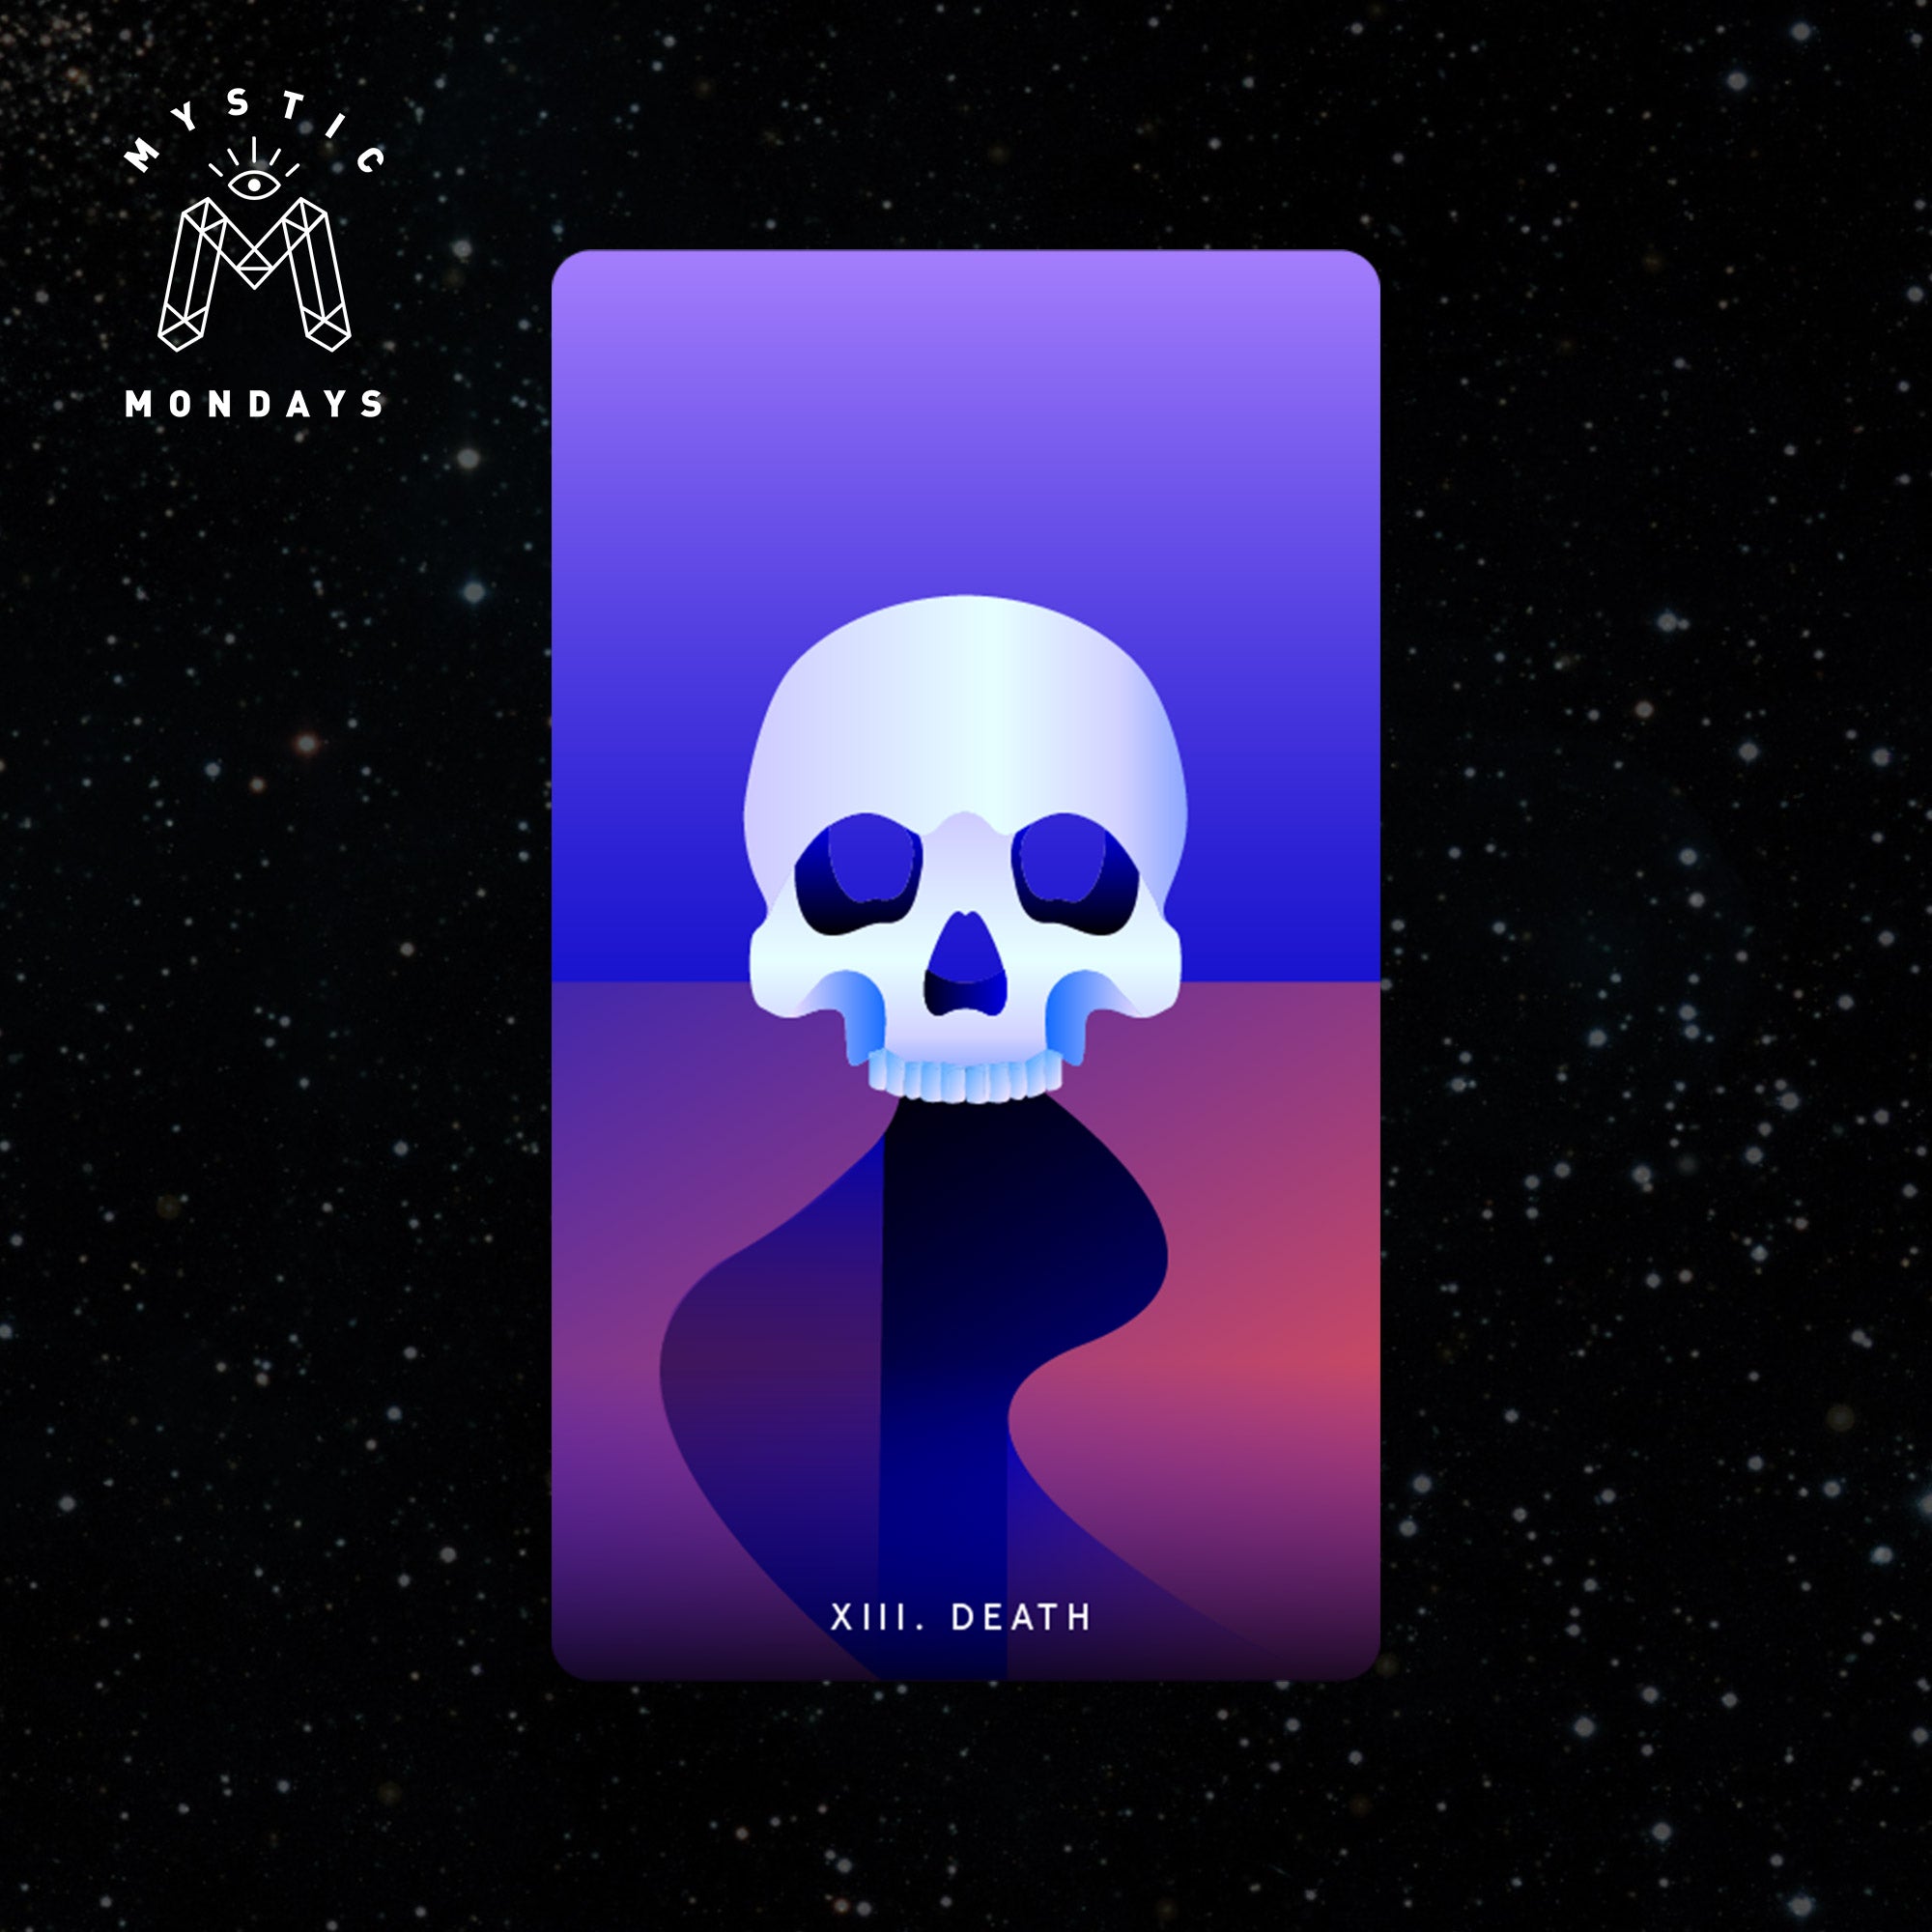 Tarot: the Death card